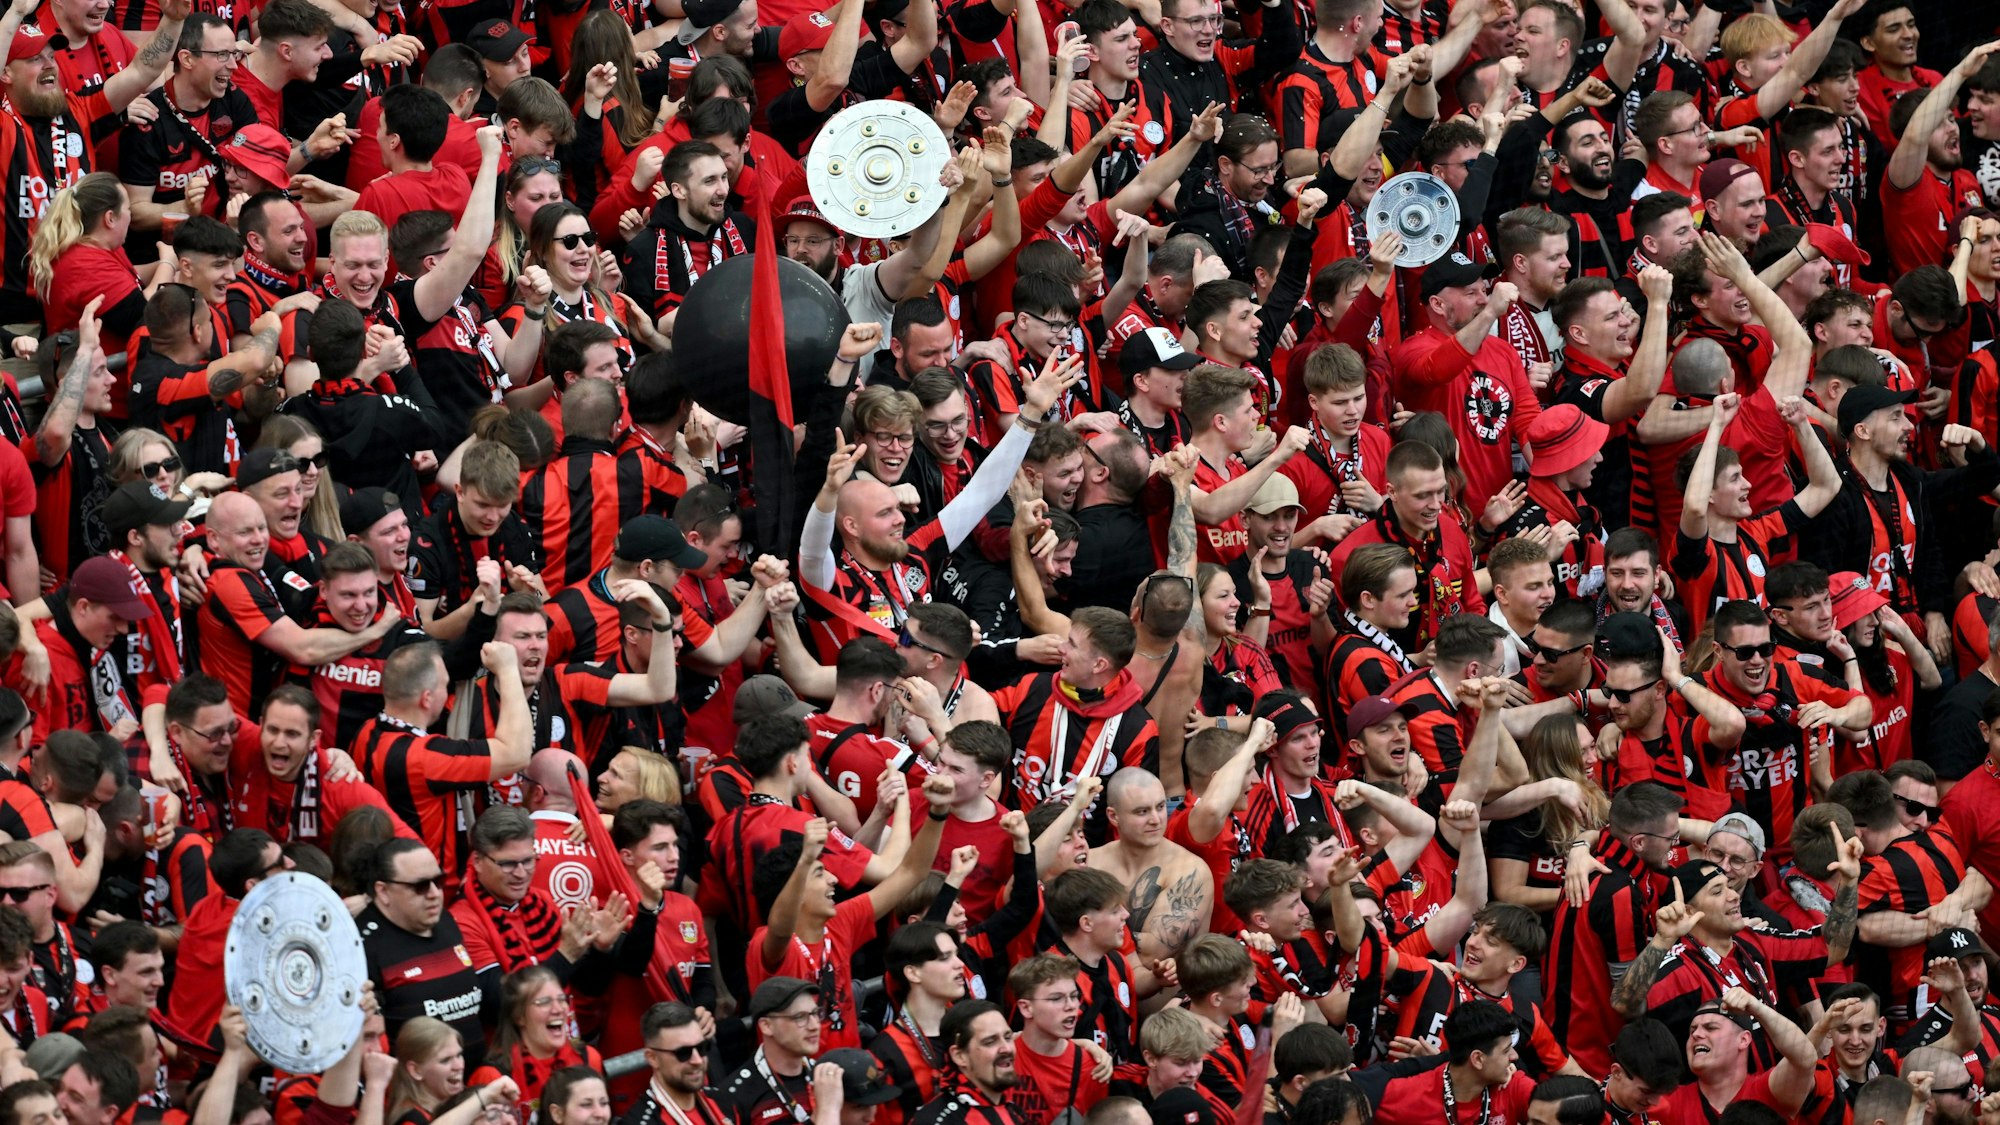 Leverkusens Fans bejubeln das Tor zum 1:0.